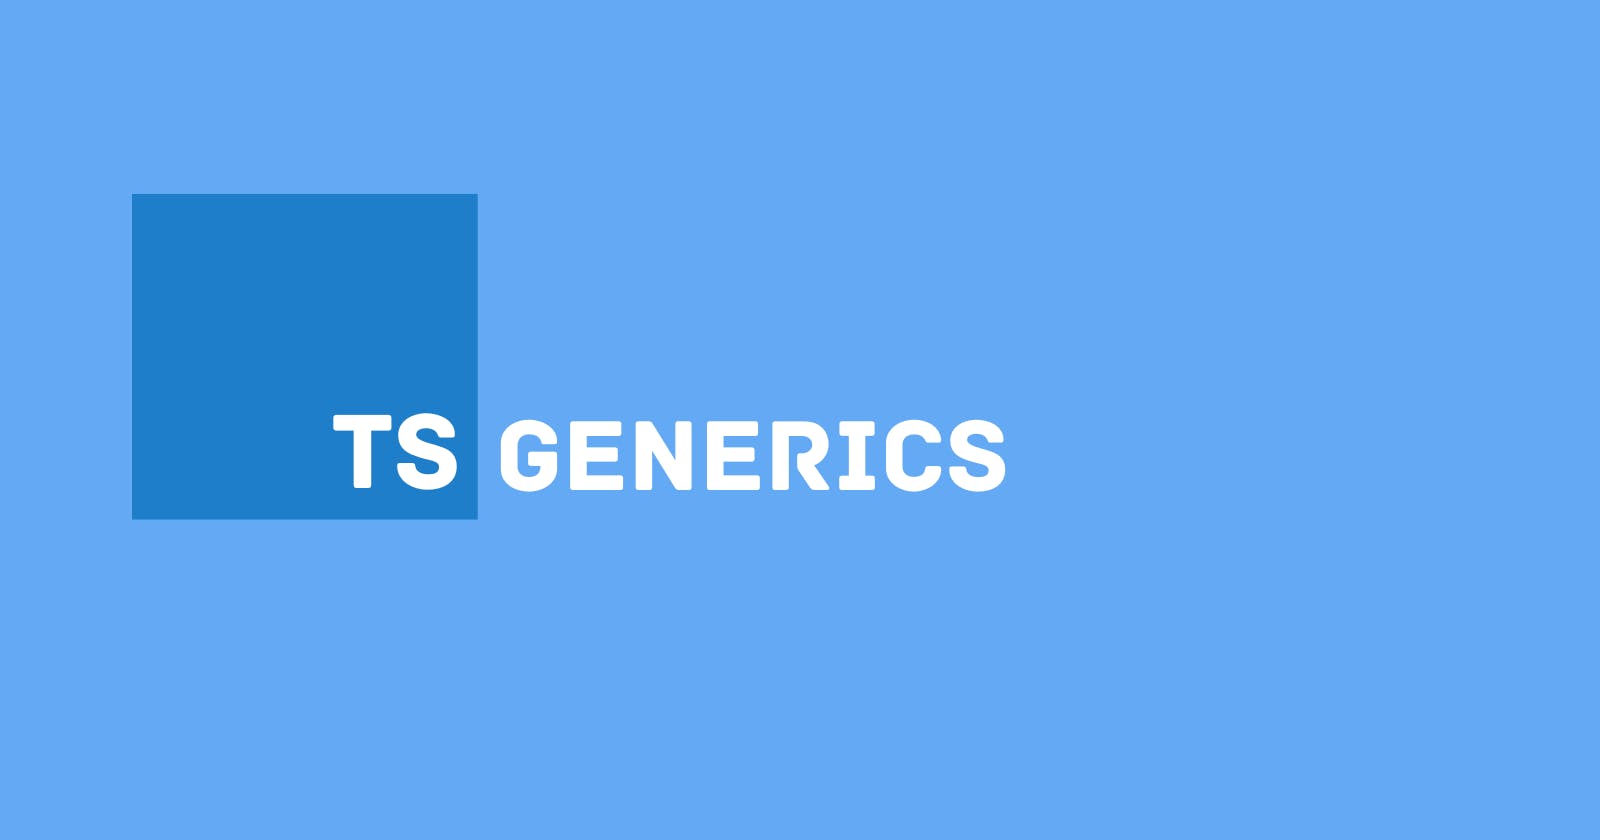 What are Generics in Typescript?